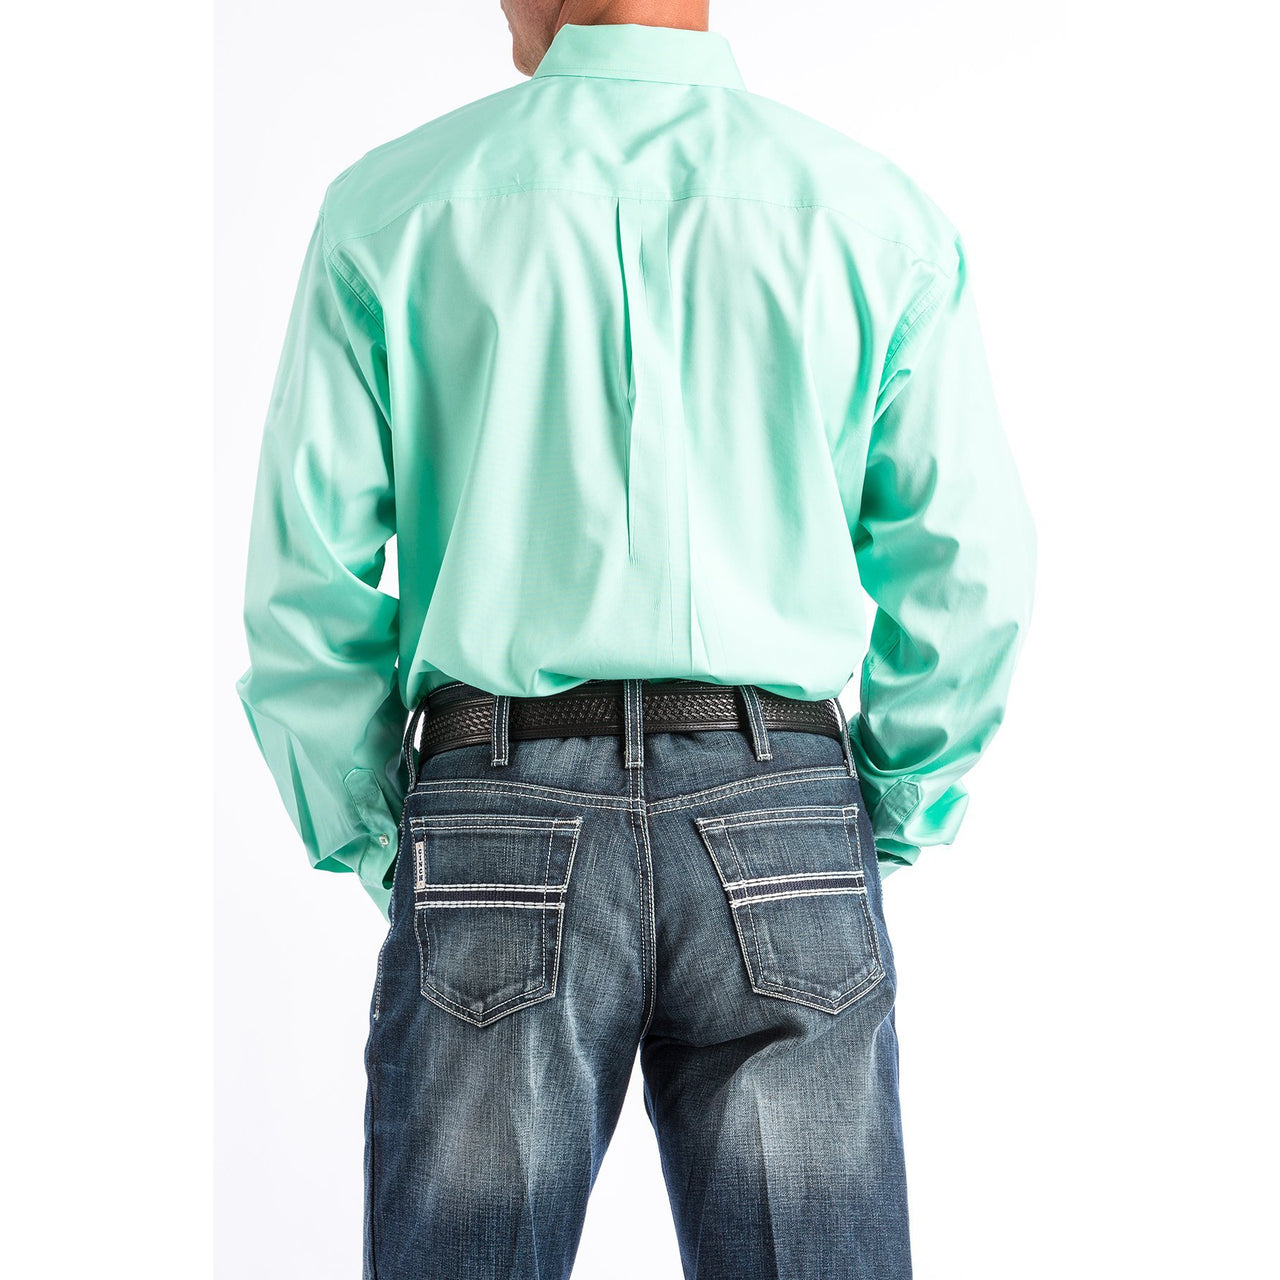 Cinch Classic Fit Long Sleeve Men's Cotton Shirt - Mint